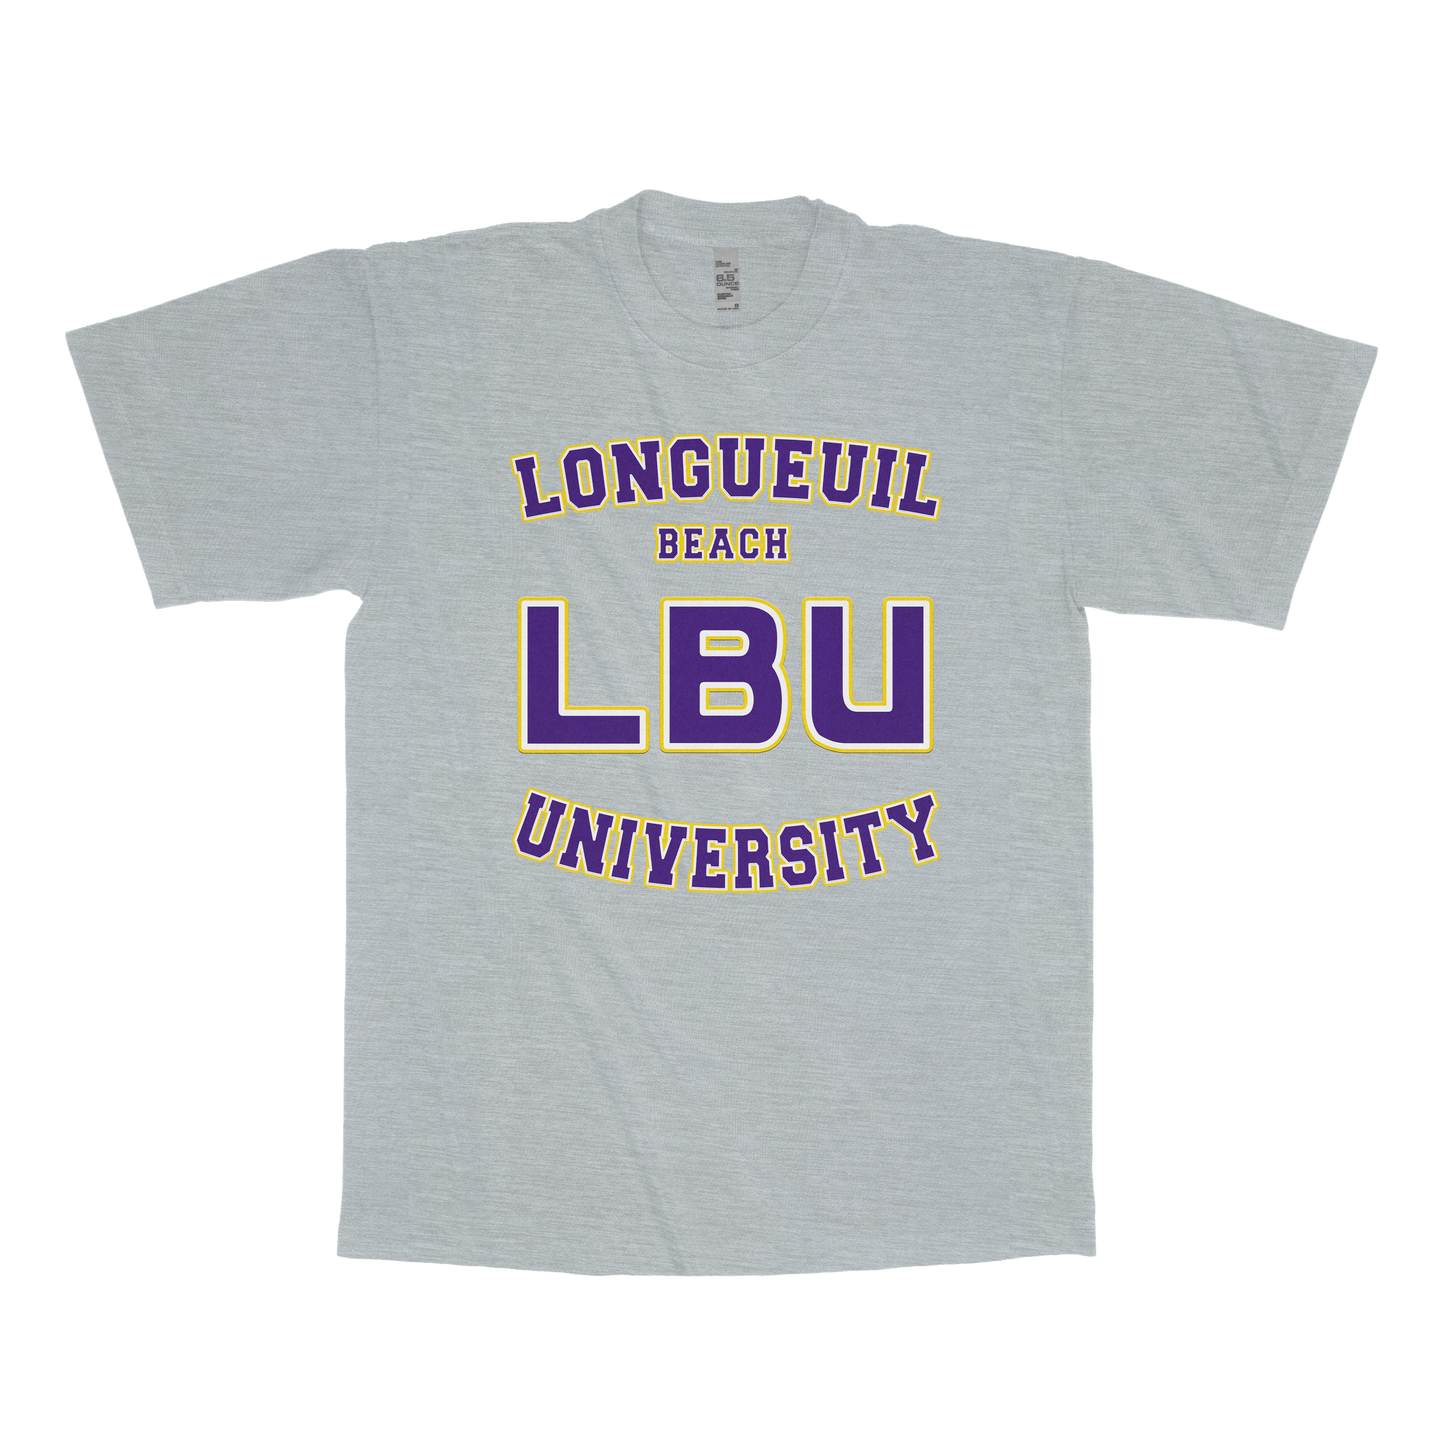 Longueuil University (FAKE U)